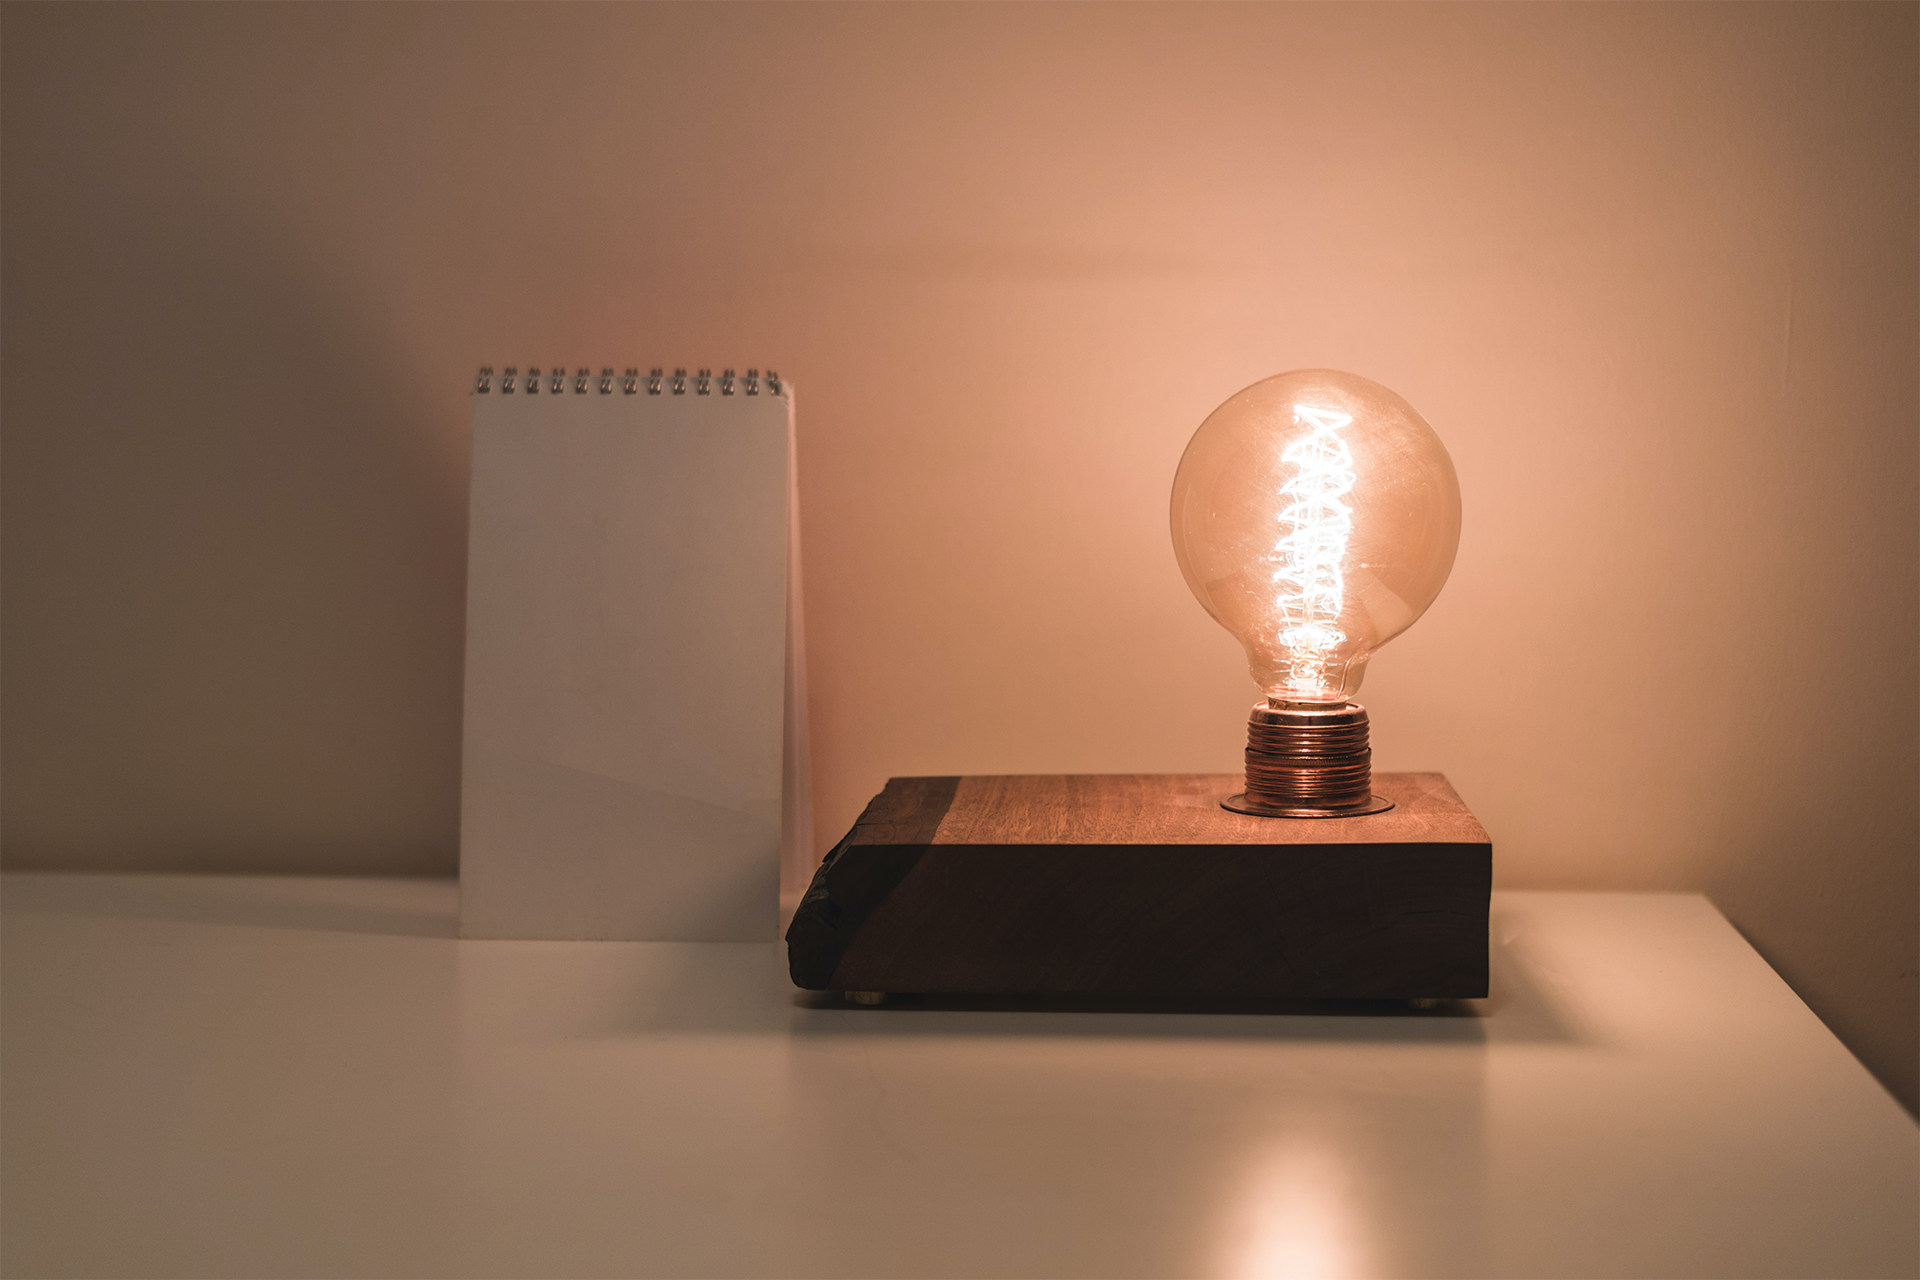 A lit lightbulb on a desk.